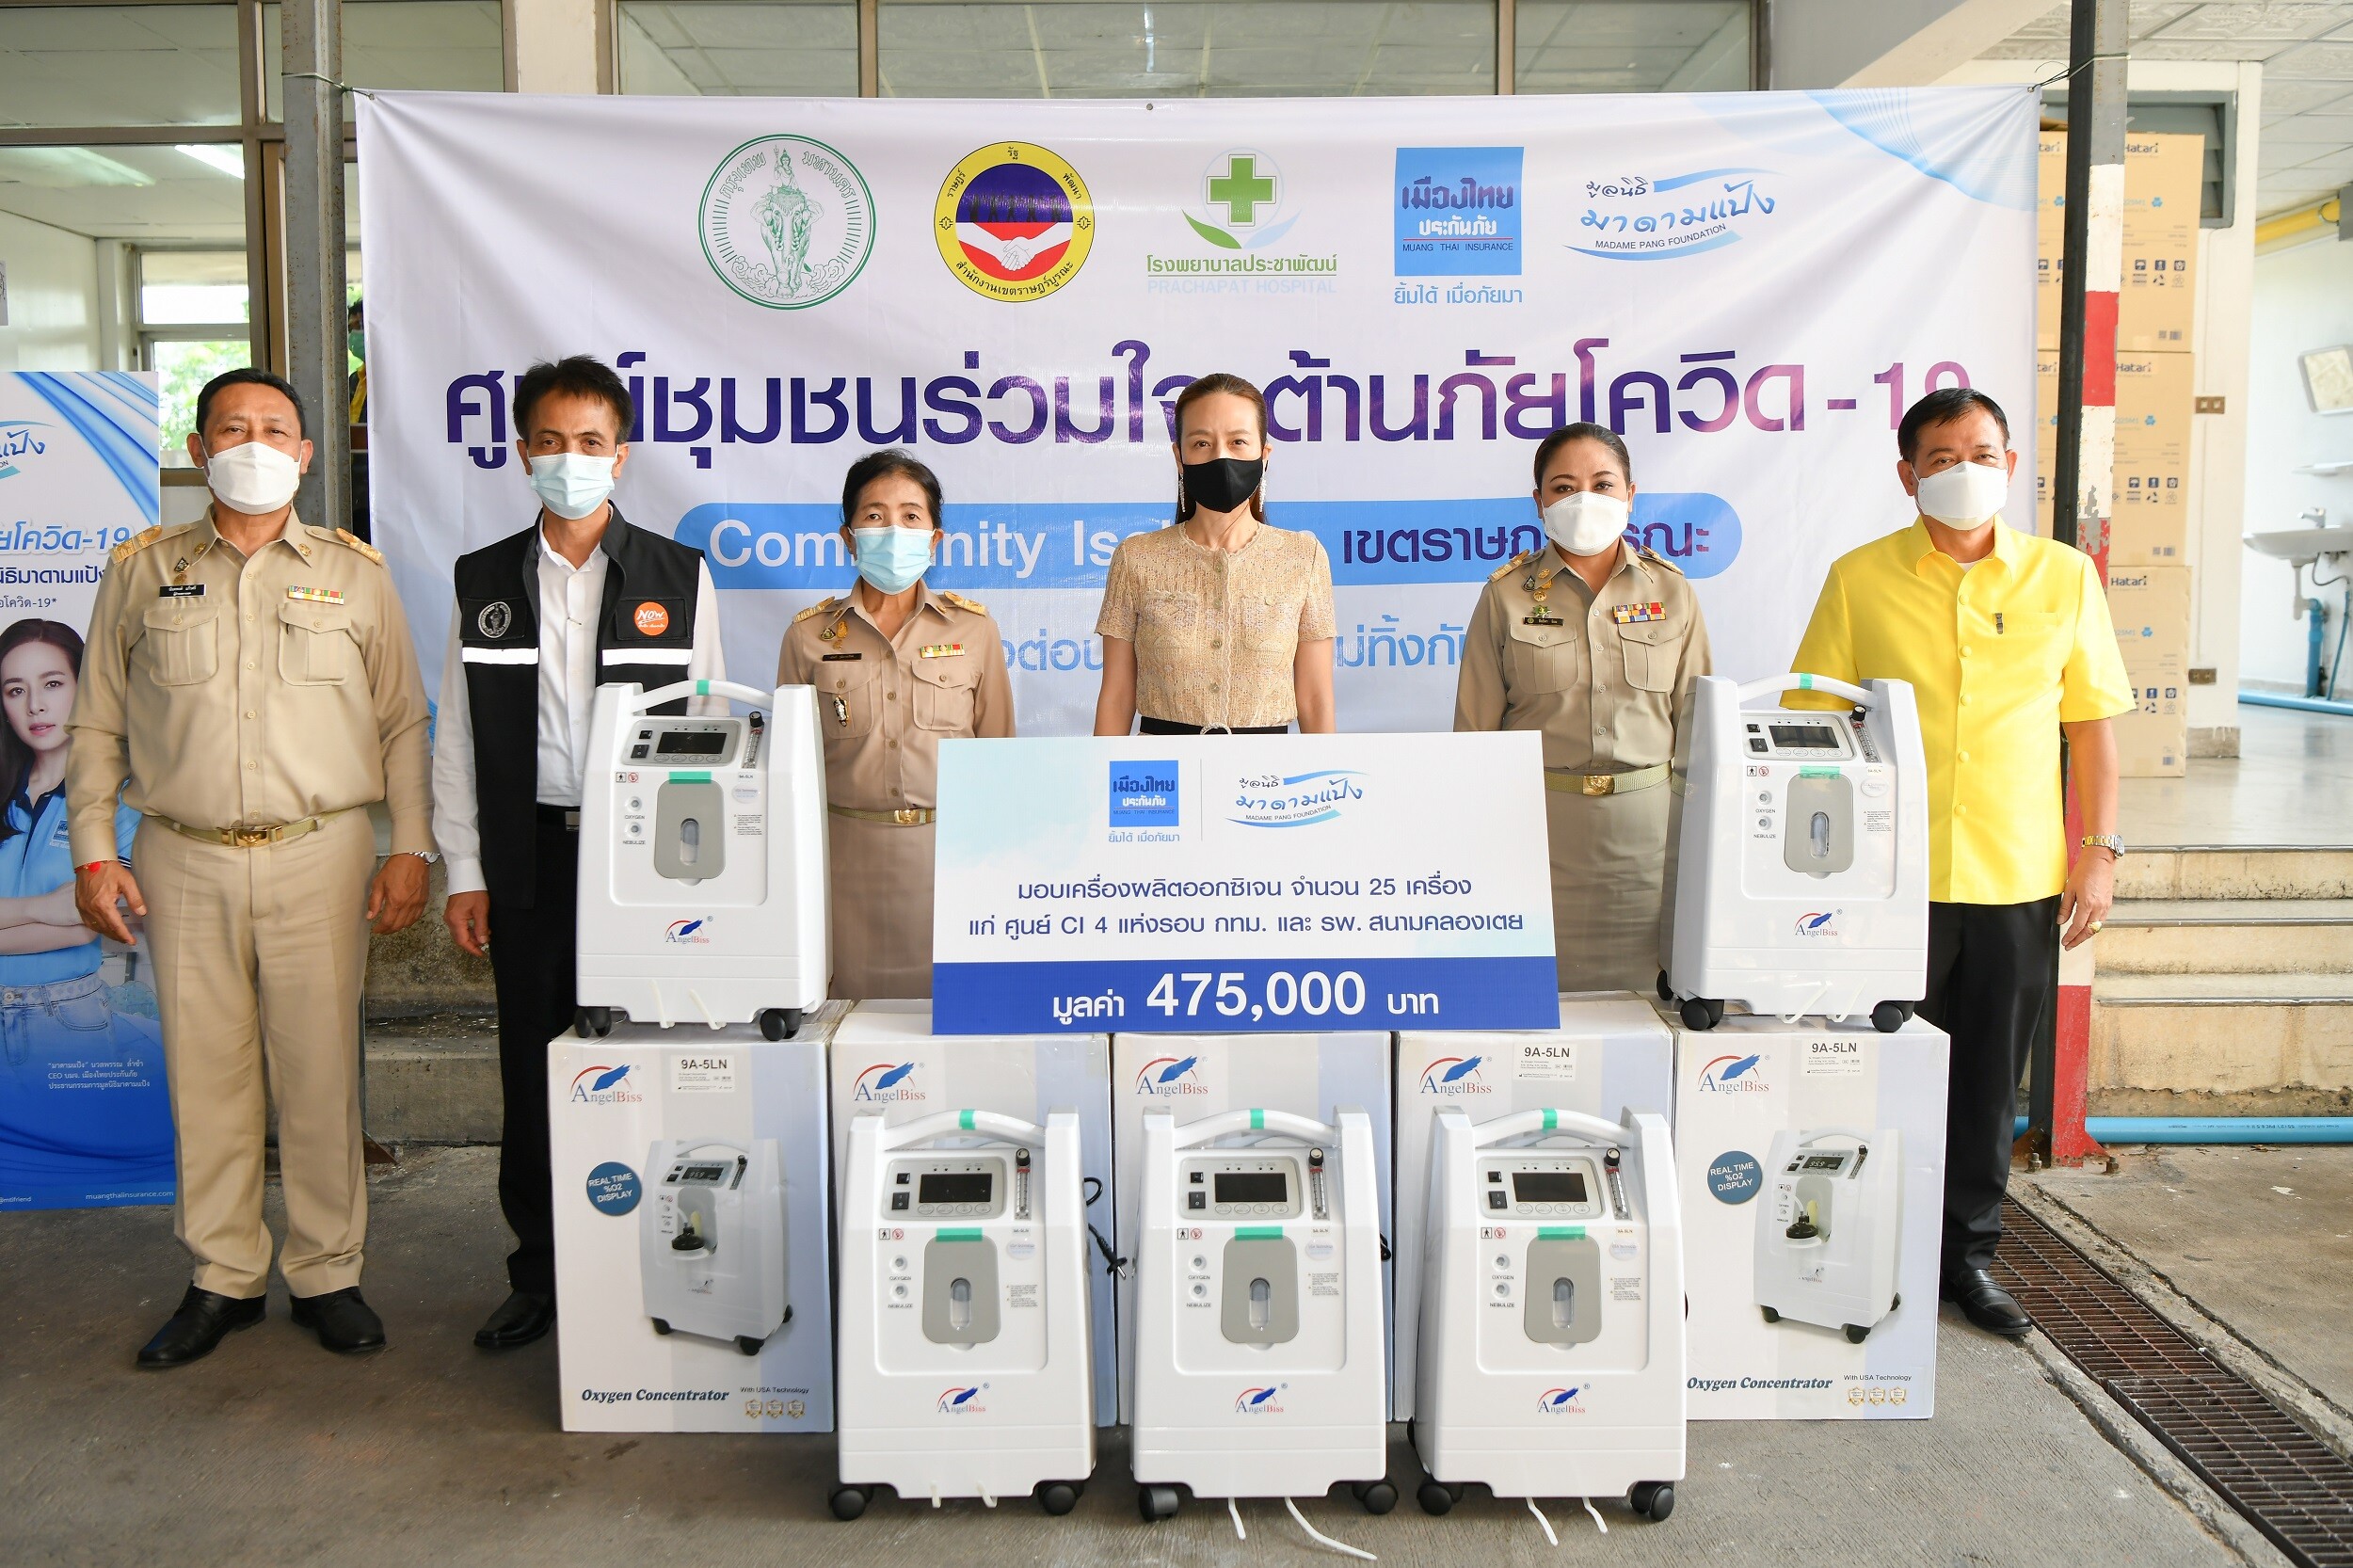 "มูลนิธิมาดามแป้ง" ร่วมกับ "เมืองไทยประกันภัย" มอบเครื่องผลิตออกซิเจน 25 เครื่อง แก่ศูนย์ดูแลผู้ป่วยทั้ง 5 ศูนย์ทั่วกรุงเทพฯ